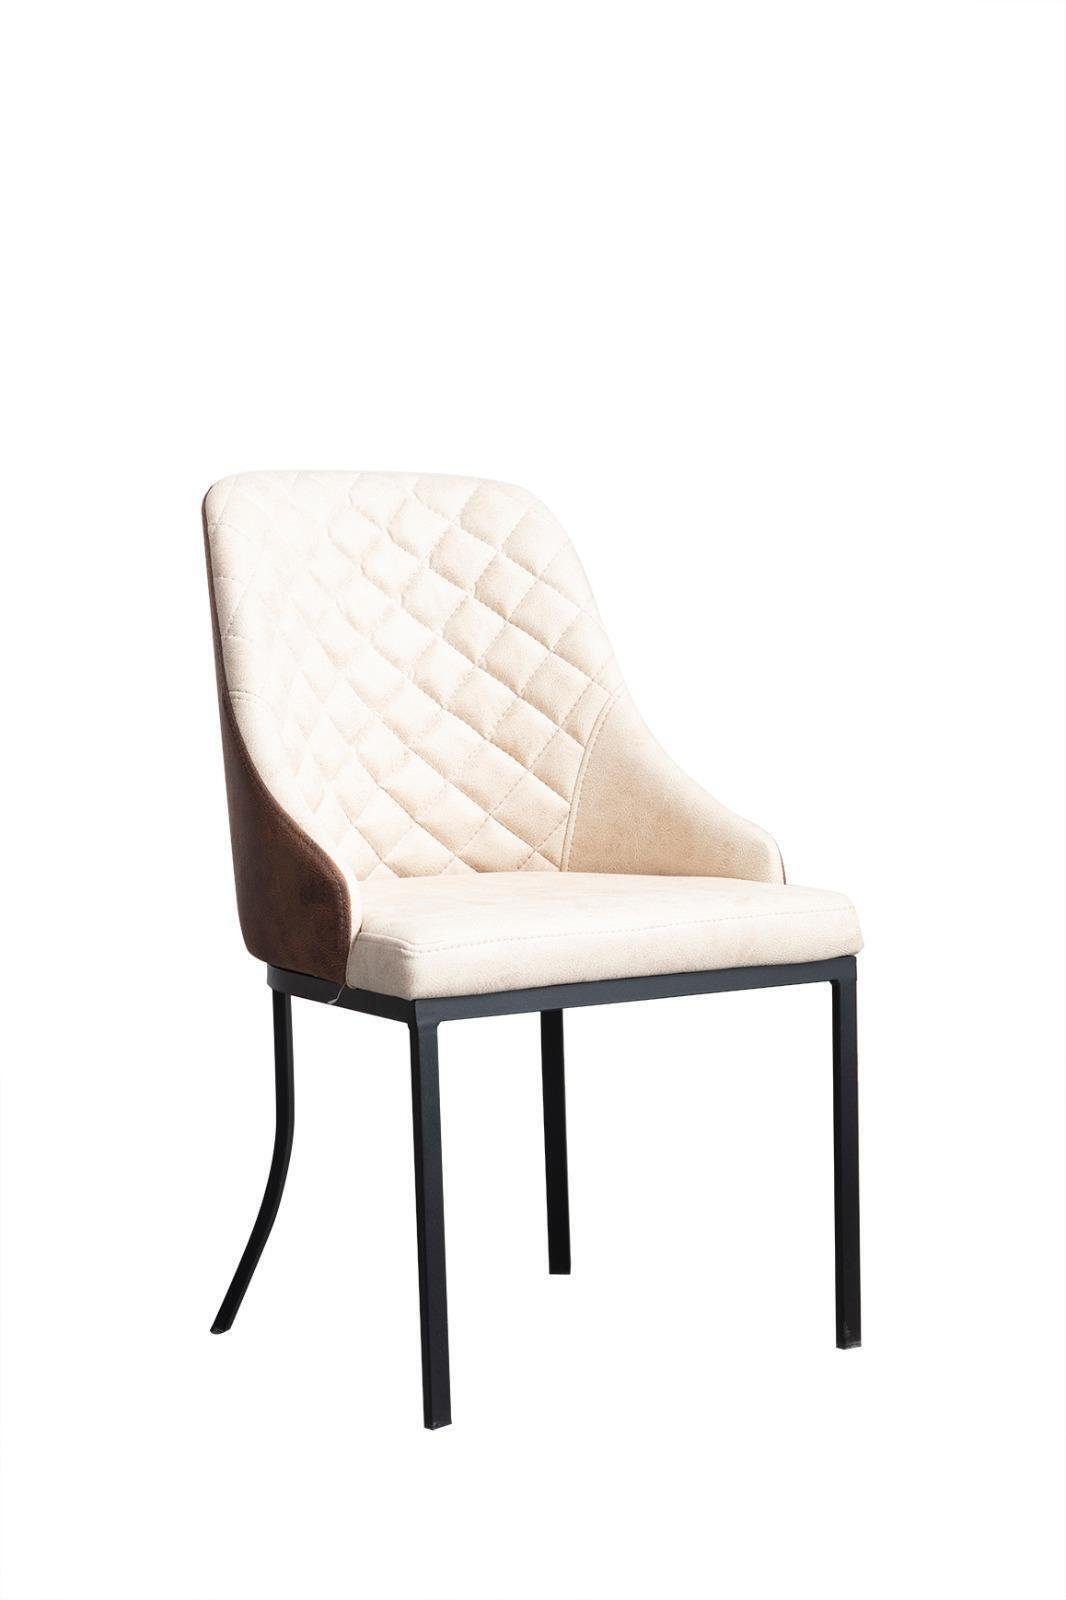 JVmoebel Stuhl Esszimmerstuhl weiß für Esstisch Metall Holz Modern stuhl elegantes